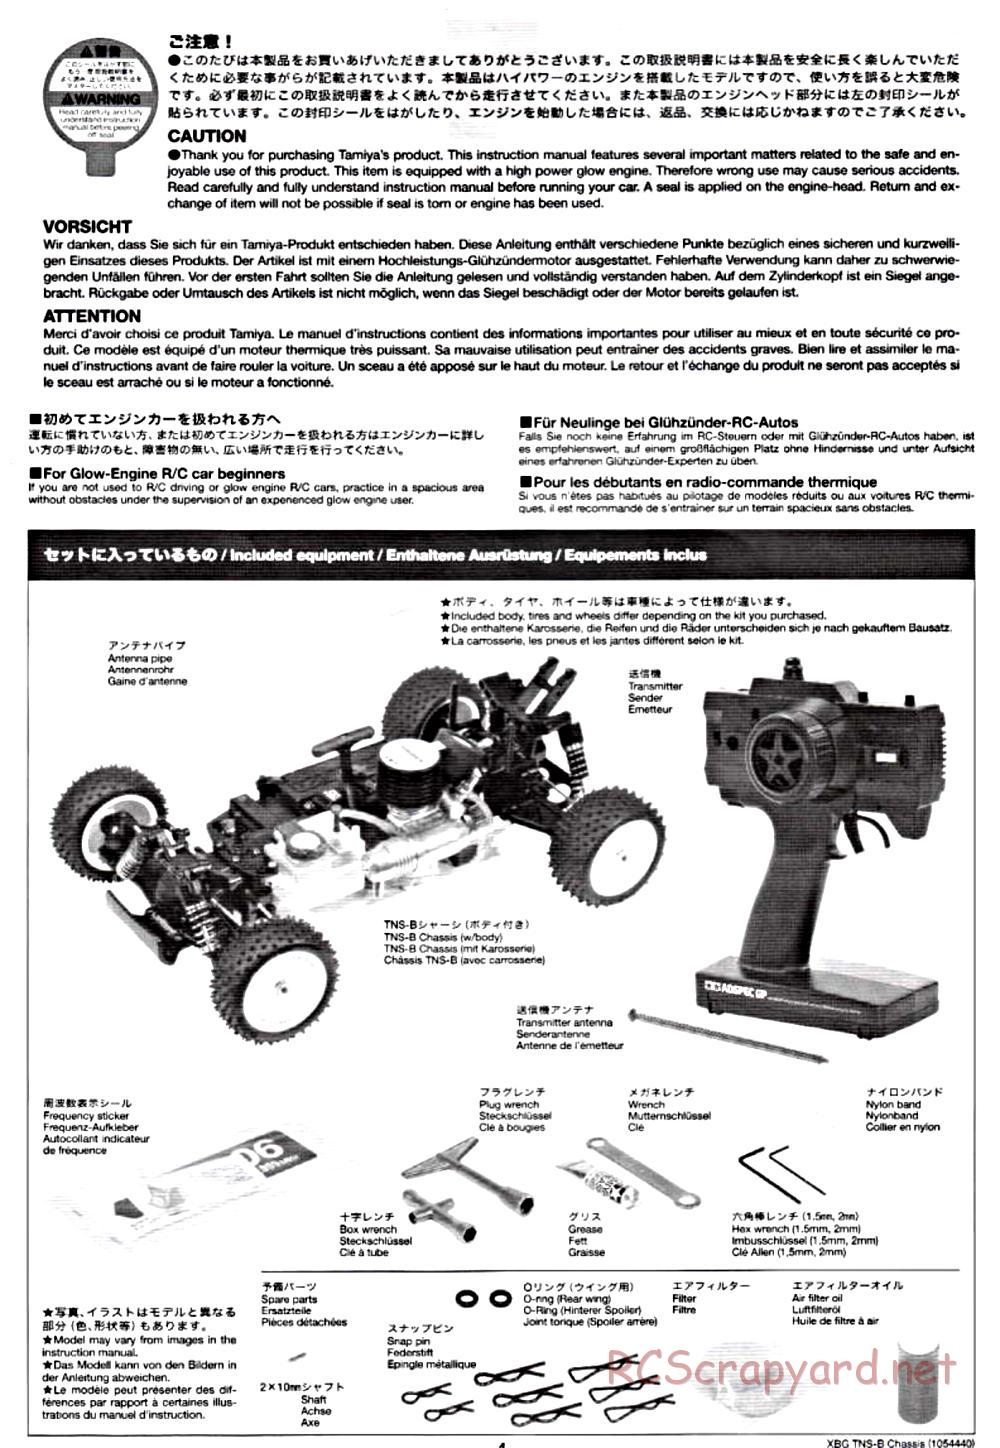 Tamiya - TNS-B Chassis - Manual - Page 4